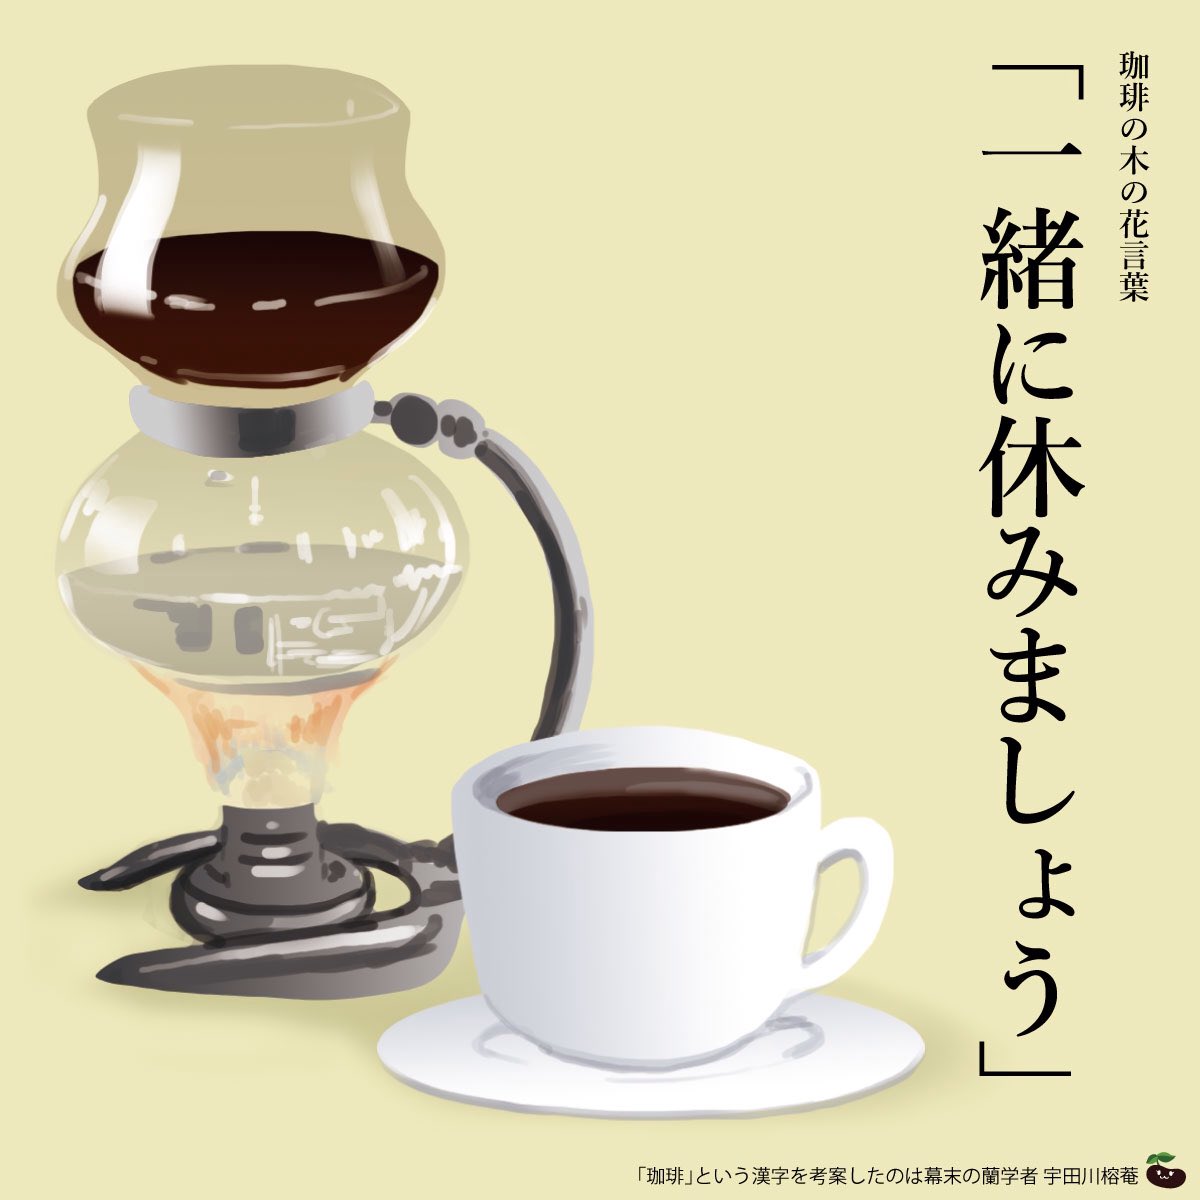 はな言葉 新刊出ました きょう4月13日は 喫茶店の日 18年のこの日 東京 下谷上野西黒門町に日本初のコーヒー専門店 可否茶館 が開店したことにちなむ 珈琲の花言葉は 一緒に休みましょう